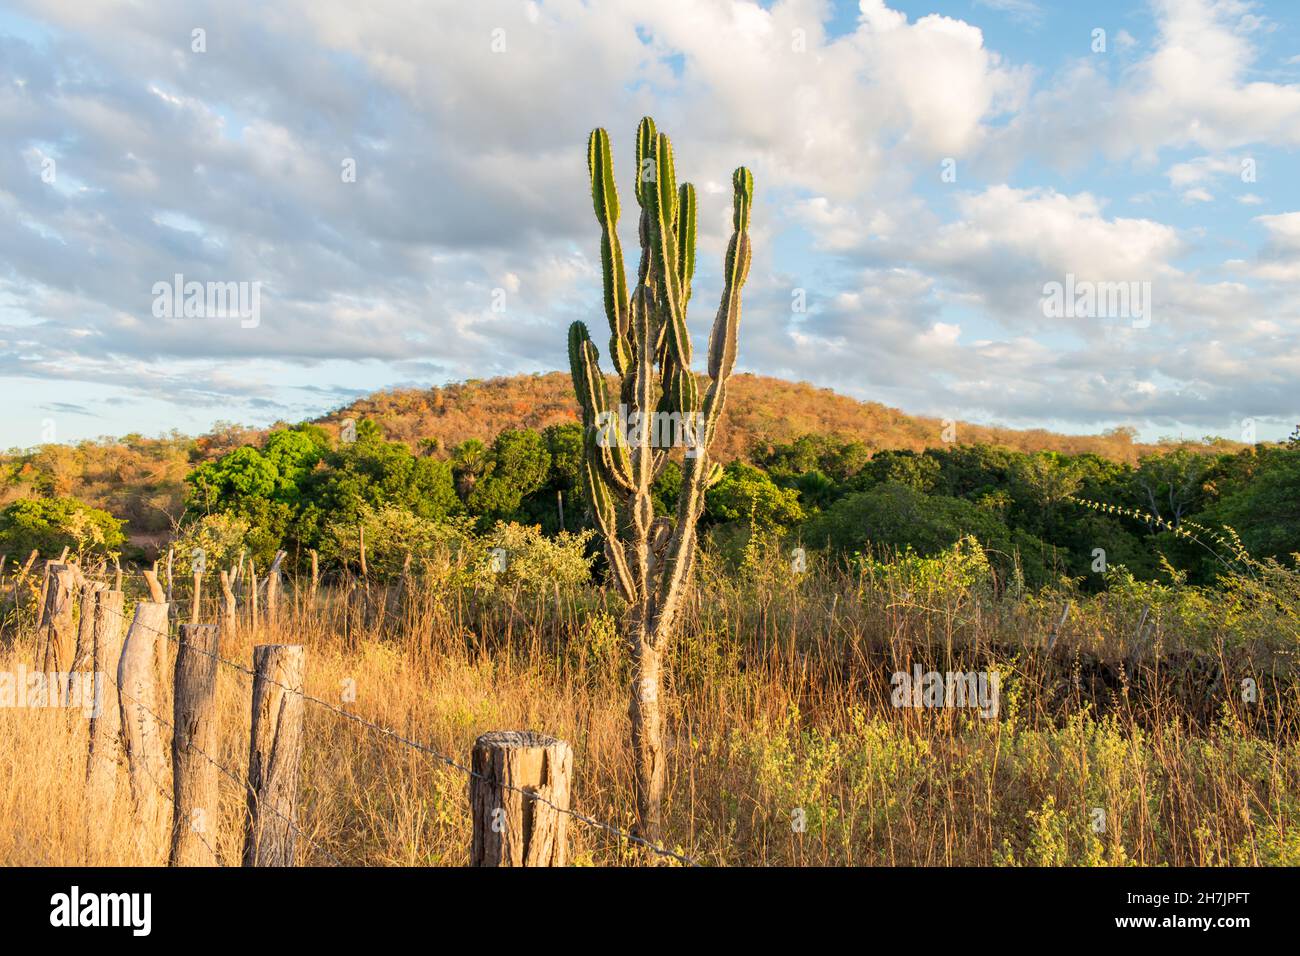 Mandacaru-Kaktus (Cereus jamacaru) und Landschaft im Herbst (Beginn der Trockenzeit) - Oeiras, Bundesstaat Piaui, Brasilien Stockfoto